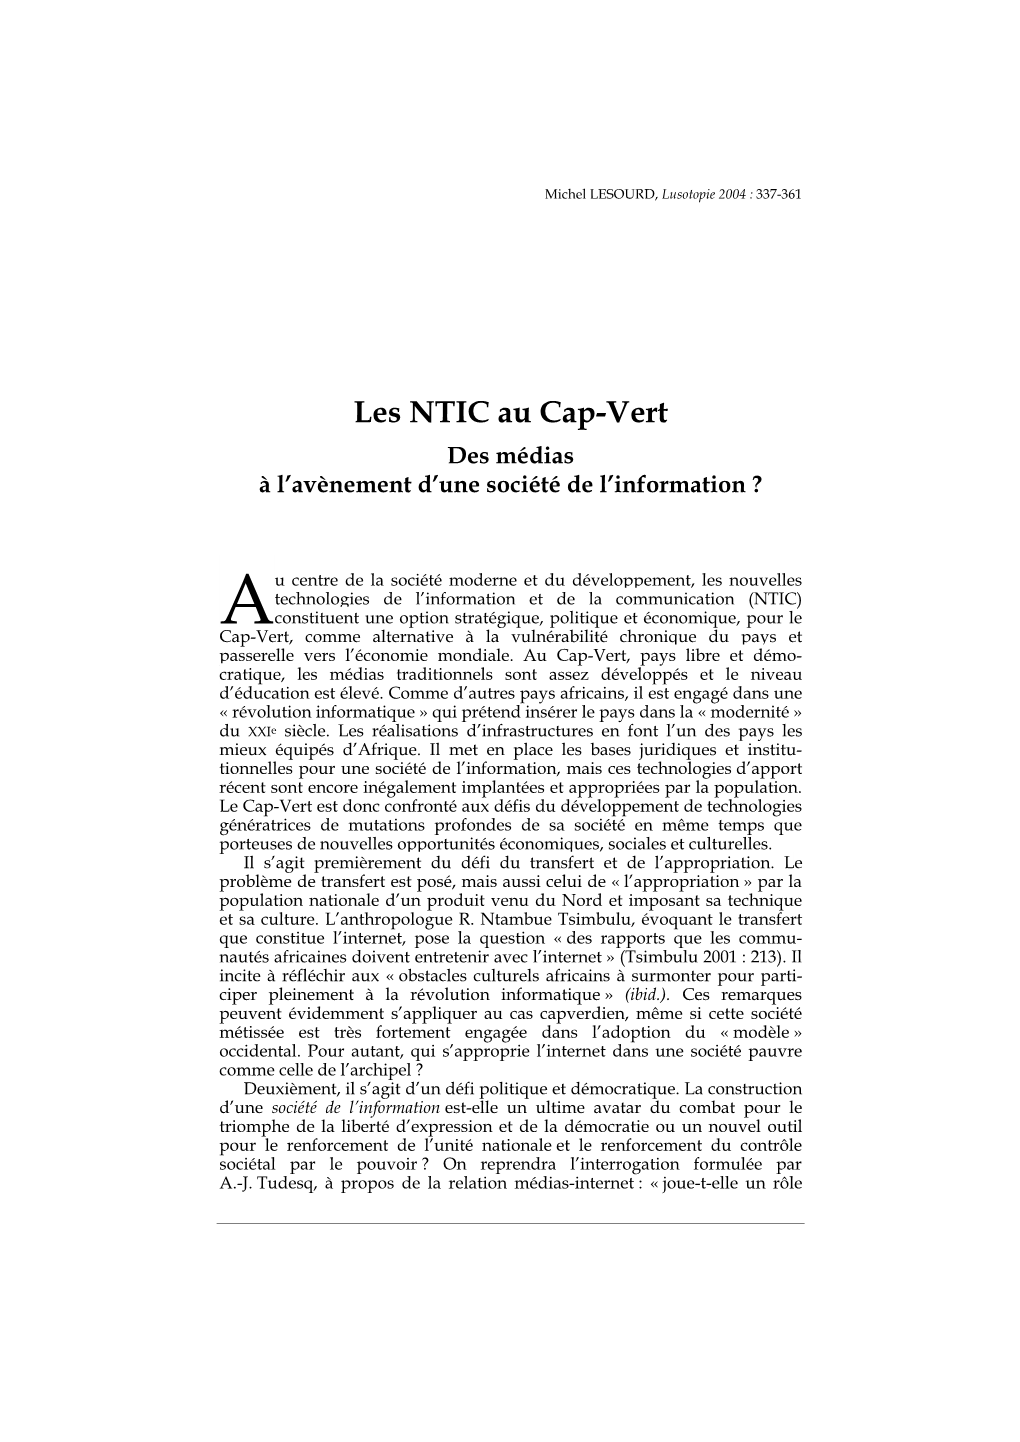 Les NTIC Au Cap-Vert Des Médias À L’Avènement D’Une Société De L’Information ?